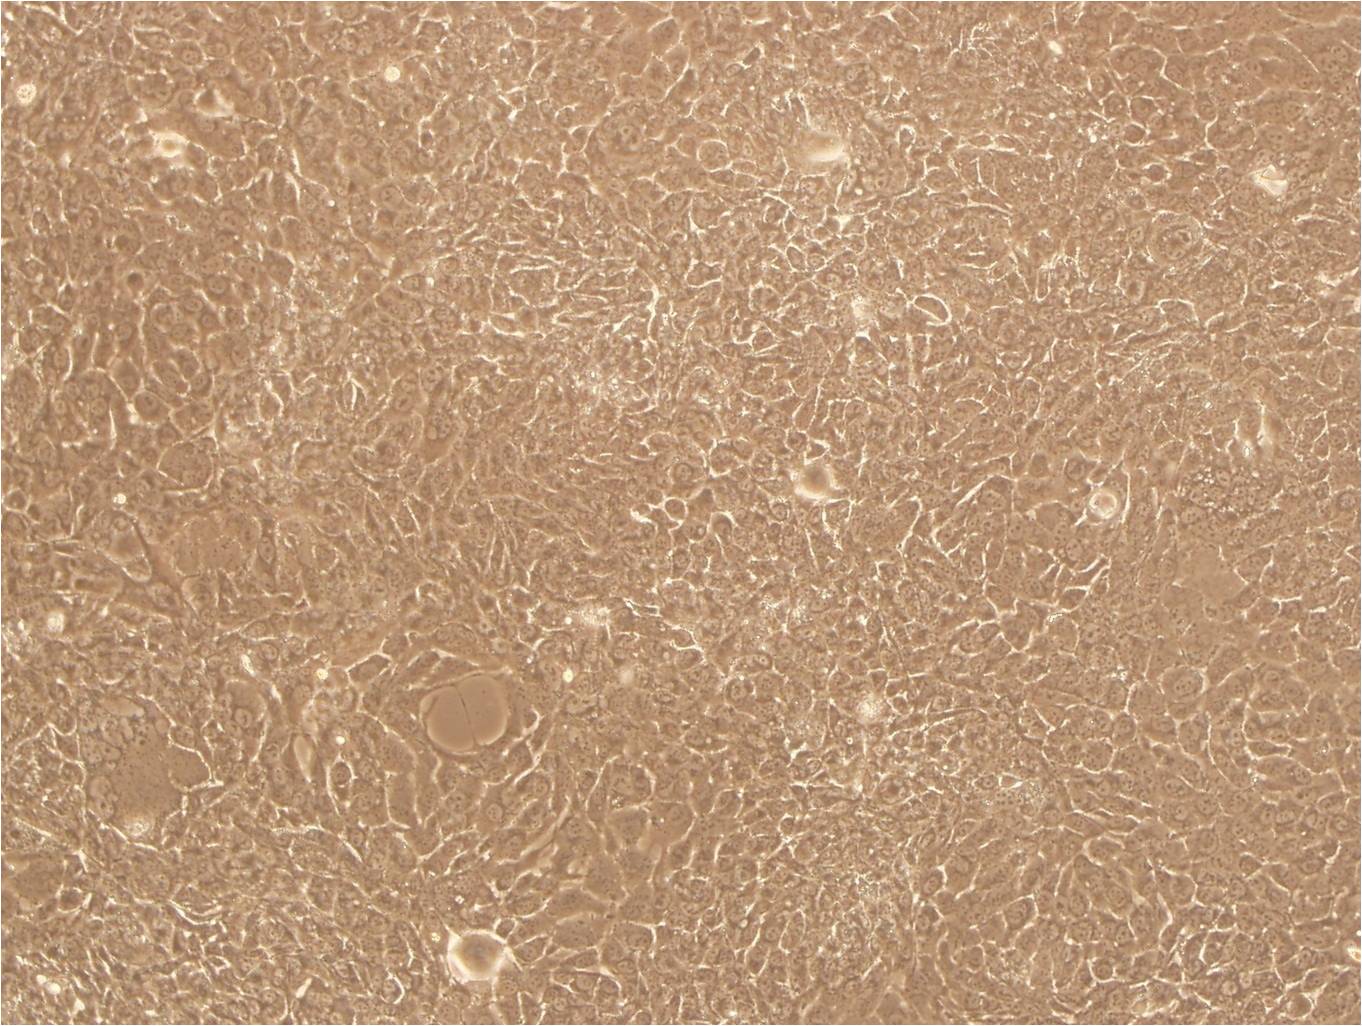 NB4:急性早幼粒复苏细胞(提供STR鉴定图谱)